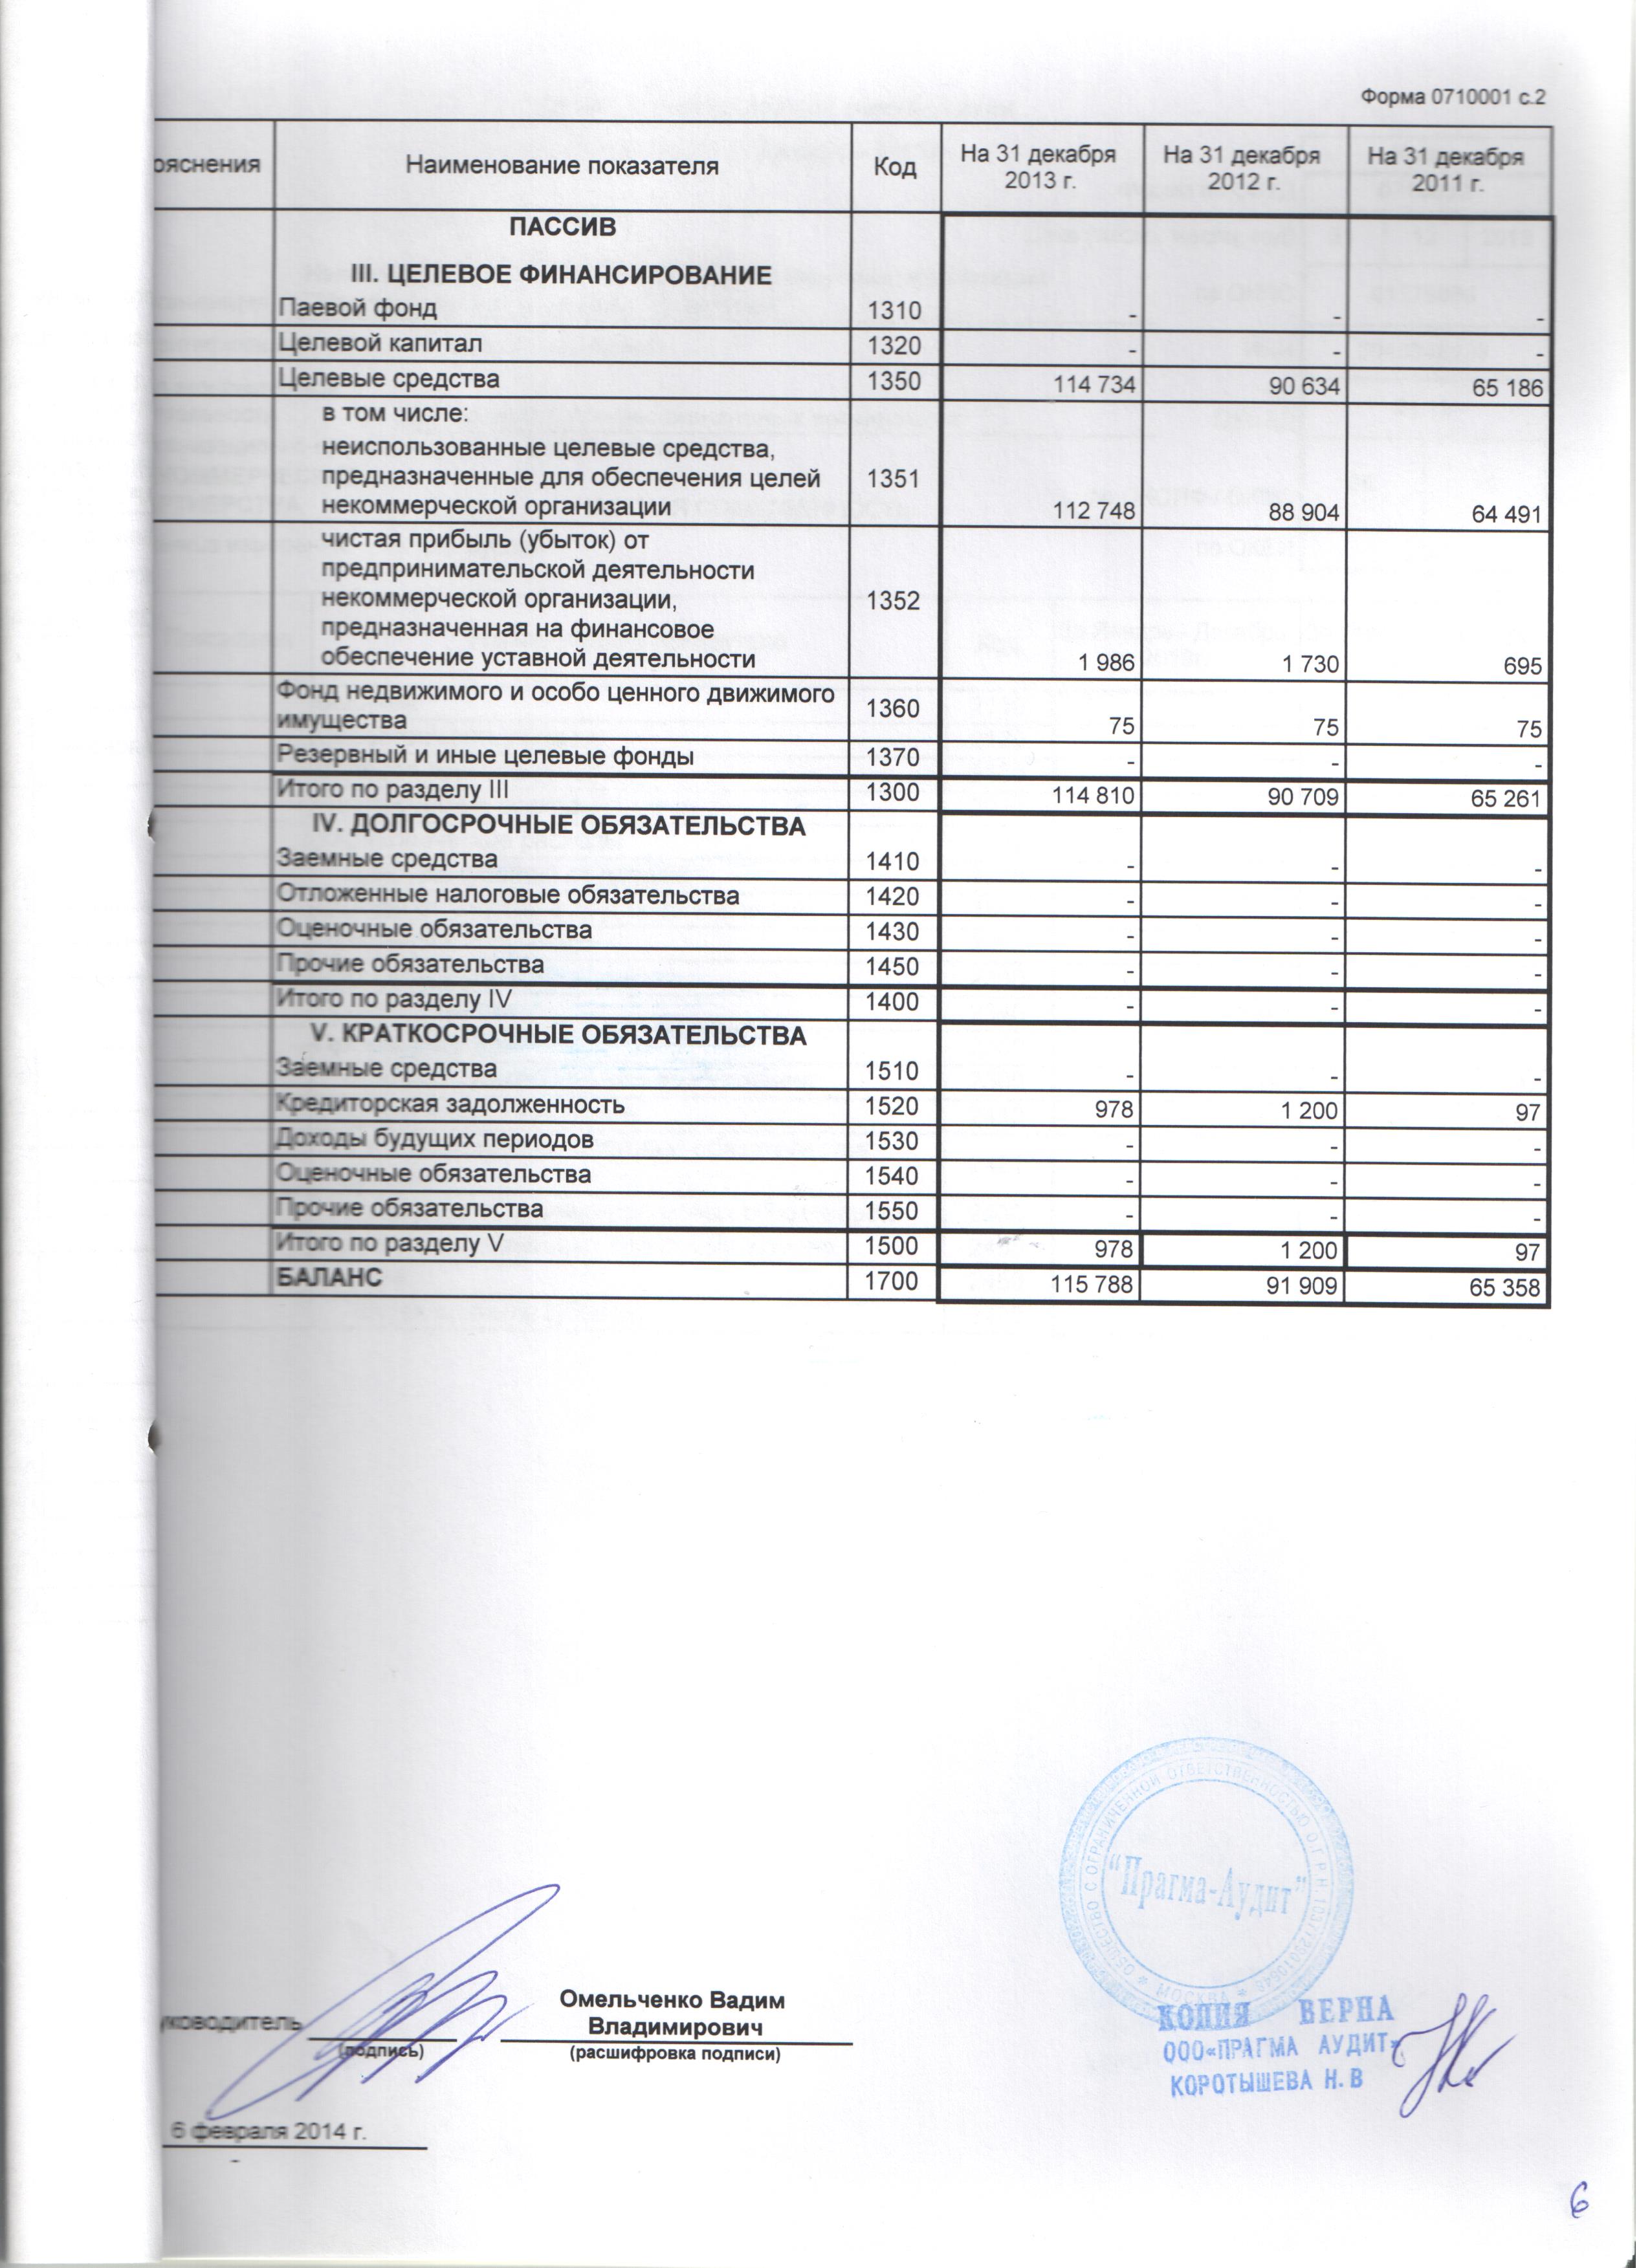 Бухгалтерская отчетность за 2013 г. (лист 2)